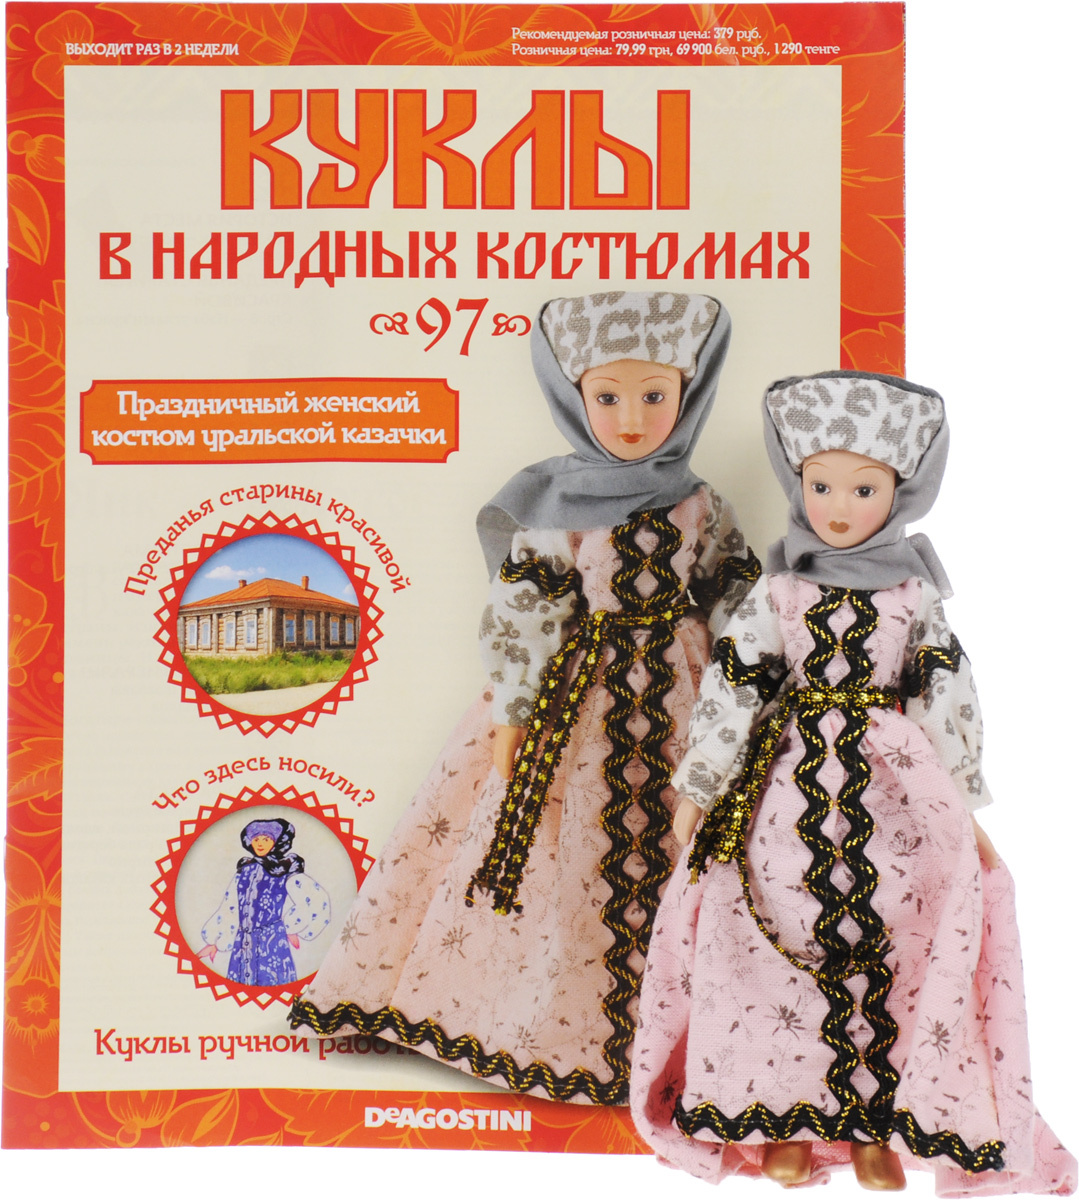 Журналы куклы в народных костюмах ДЕАГОСТИНИ